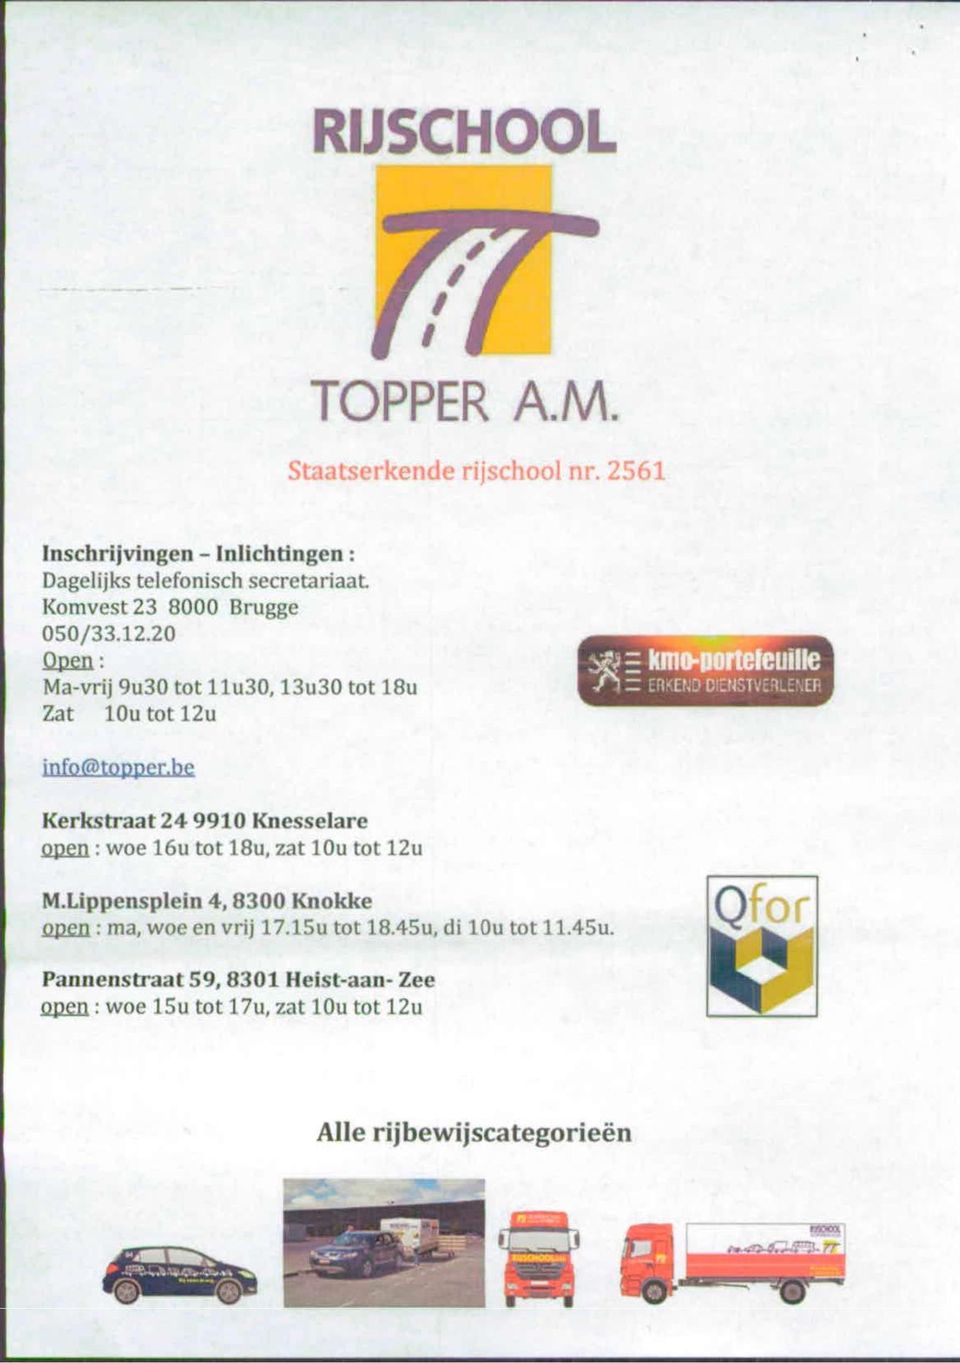 Komvest 23 8000 Brugge Open : Ma-vrij 9u30 tot llu30,13u30 tot 18u Zat lou tot 12u info@topper.